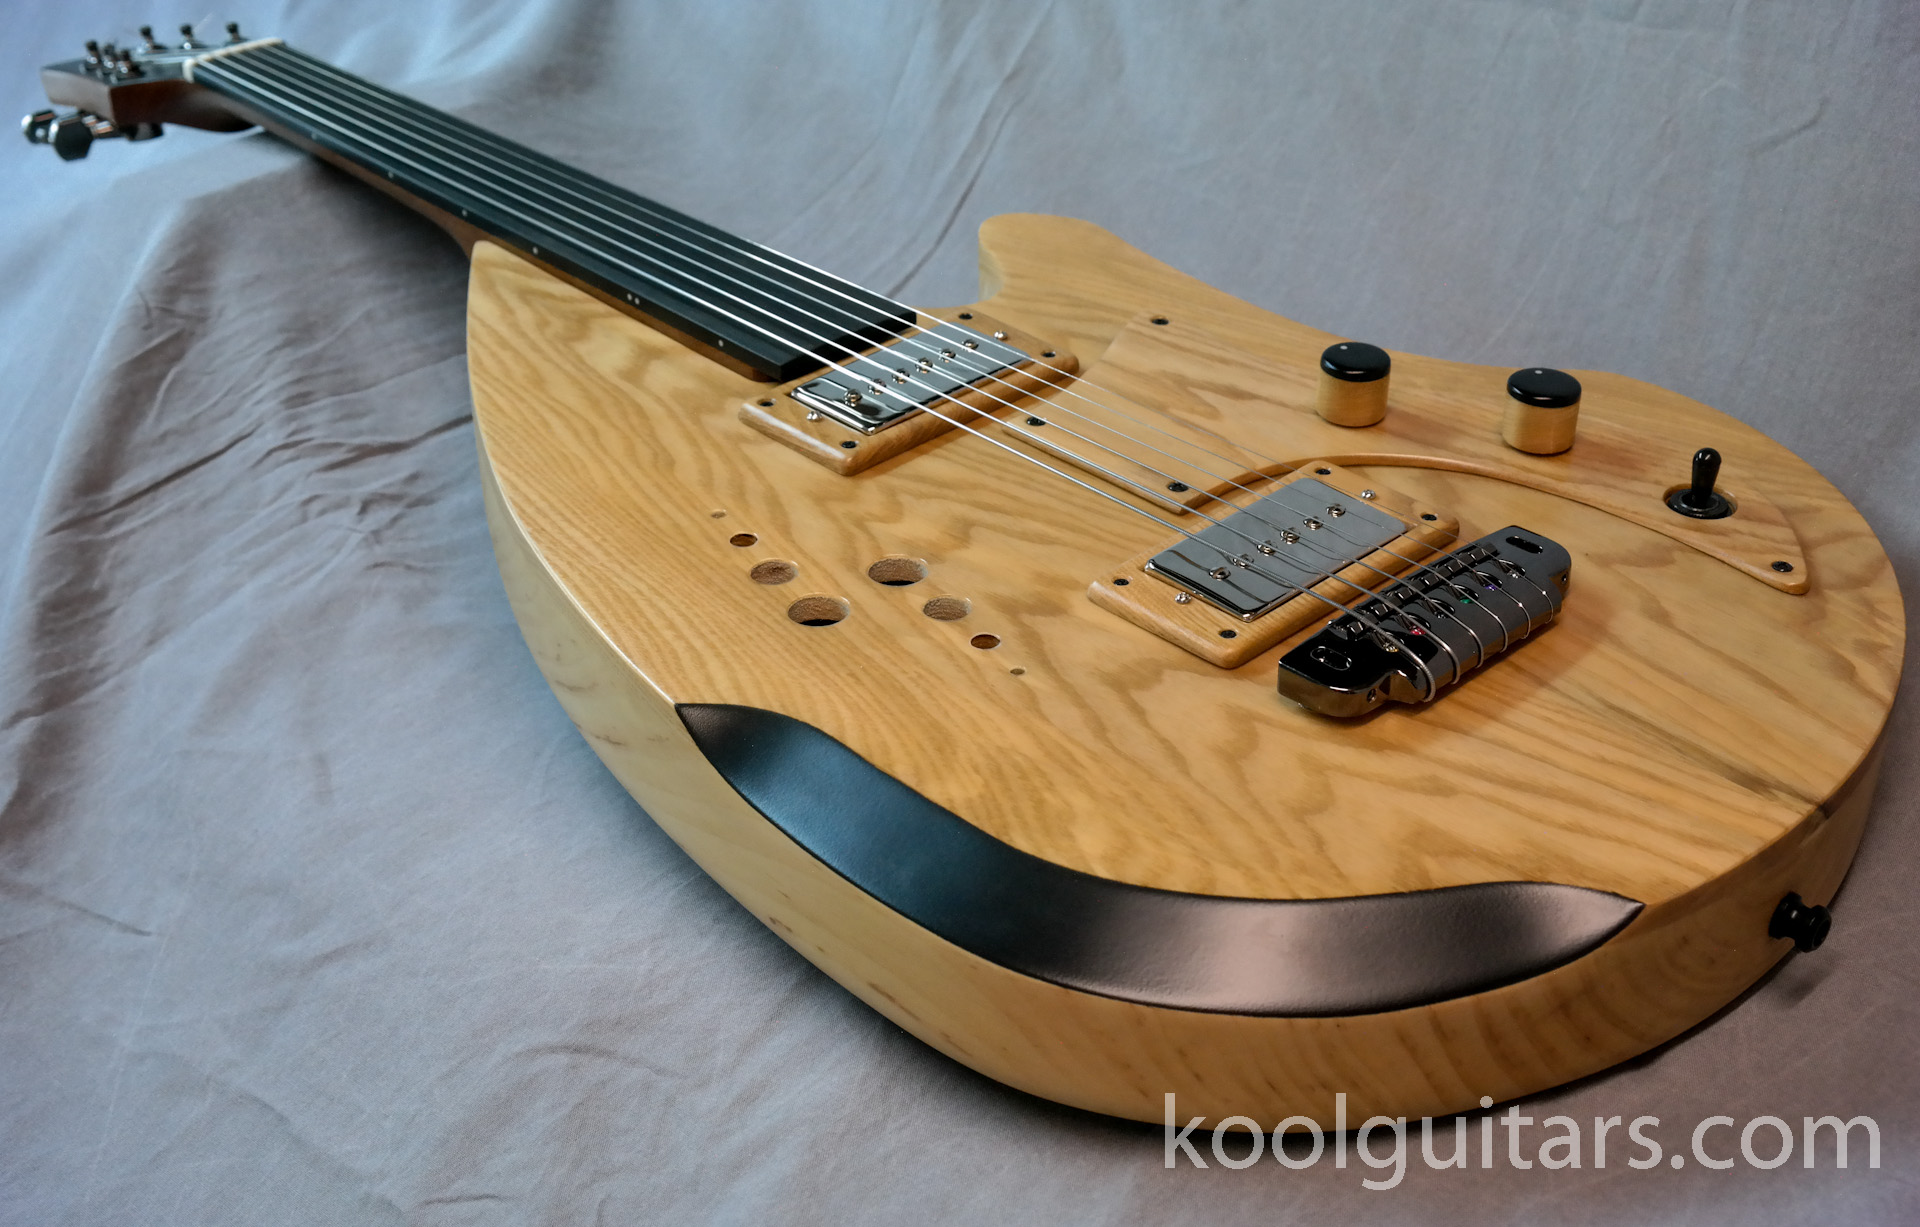 chitarra elettrica di liuteria, hollowbody, custom guitar